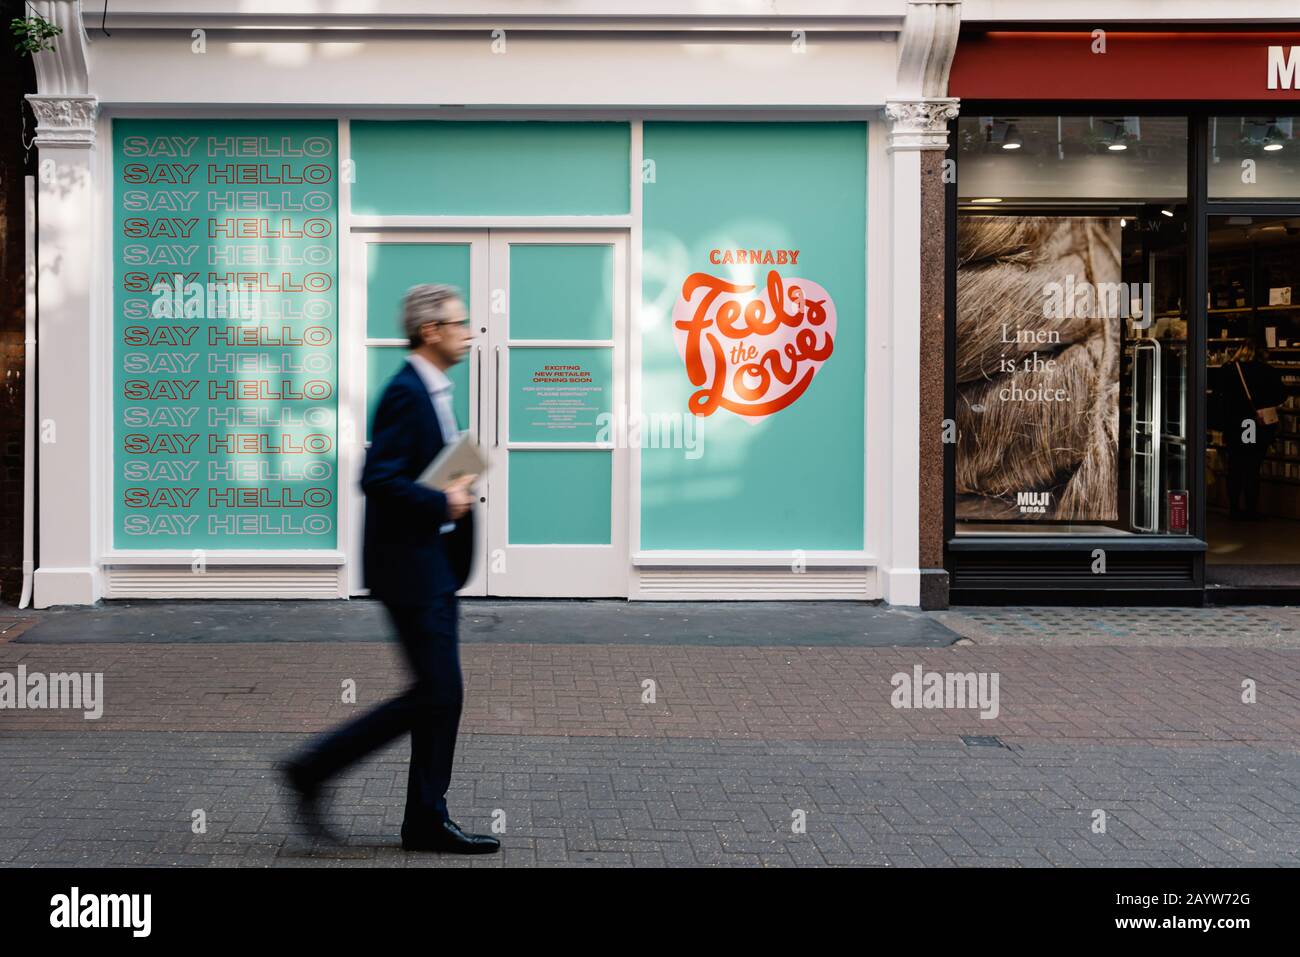 Londres, Royaume-Uni - 15 mai 2019: Les acheteurs qui passent devant un espace de vente vide à louer à Carnaby Street, Soho, dans le West End de Londres. Flou de mouvement Banque D'Images